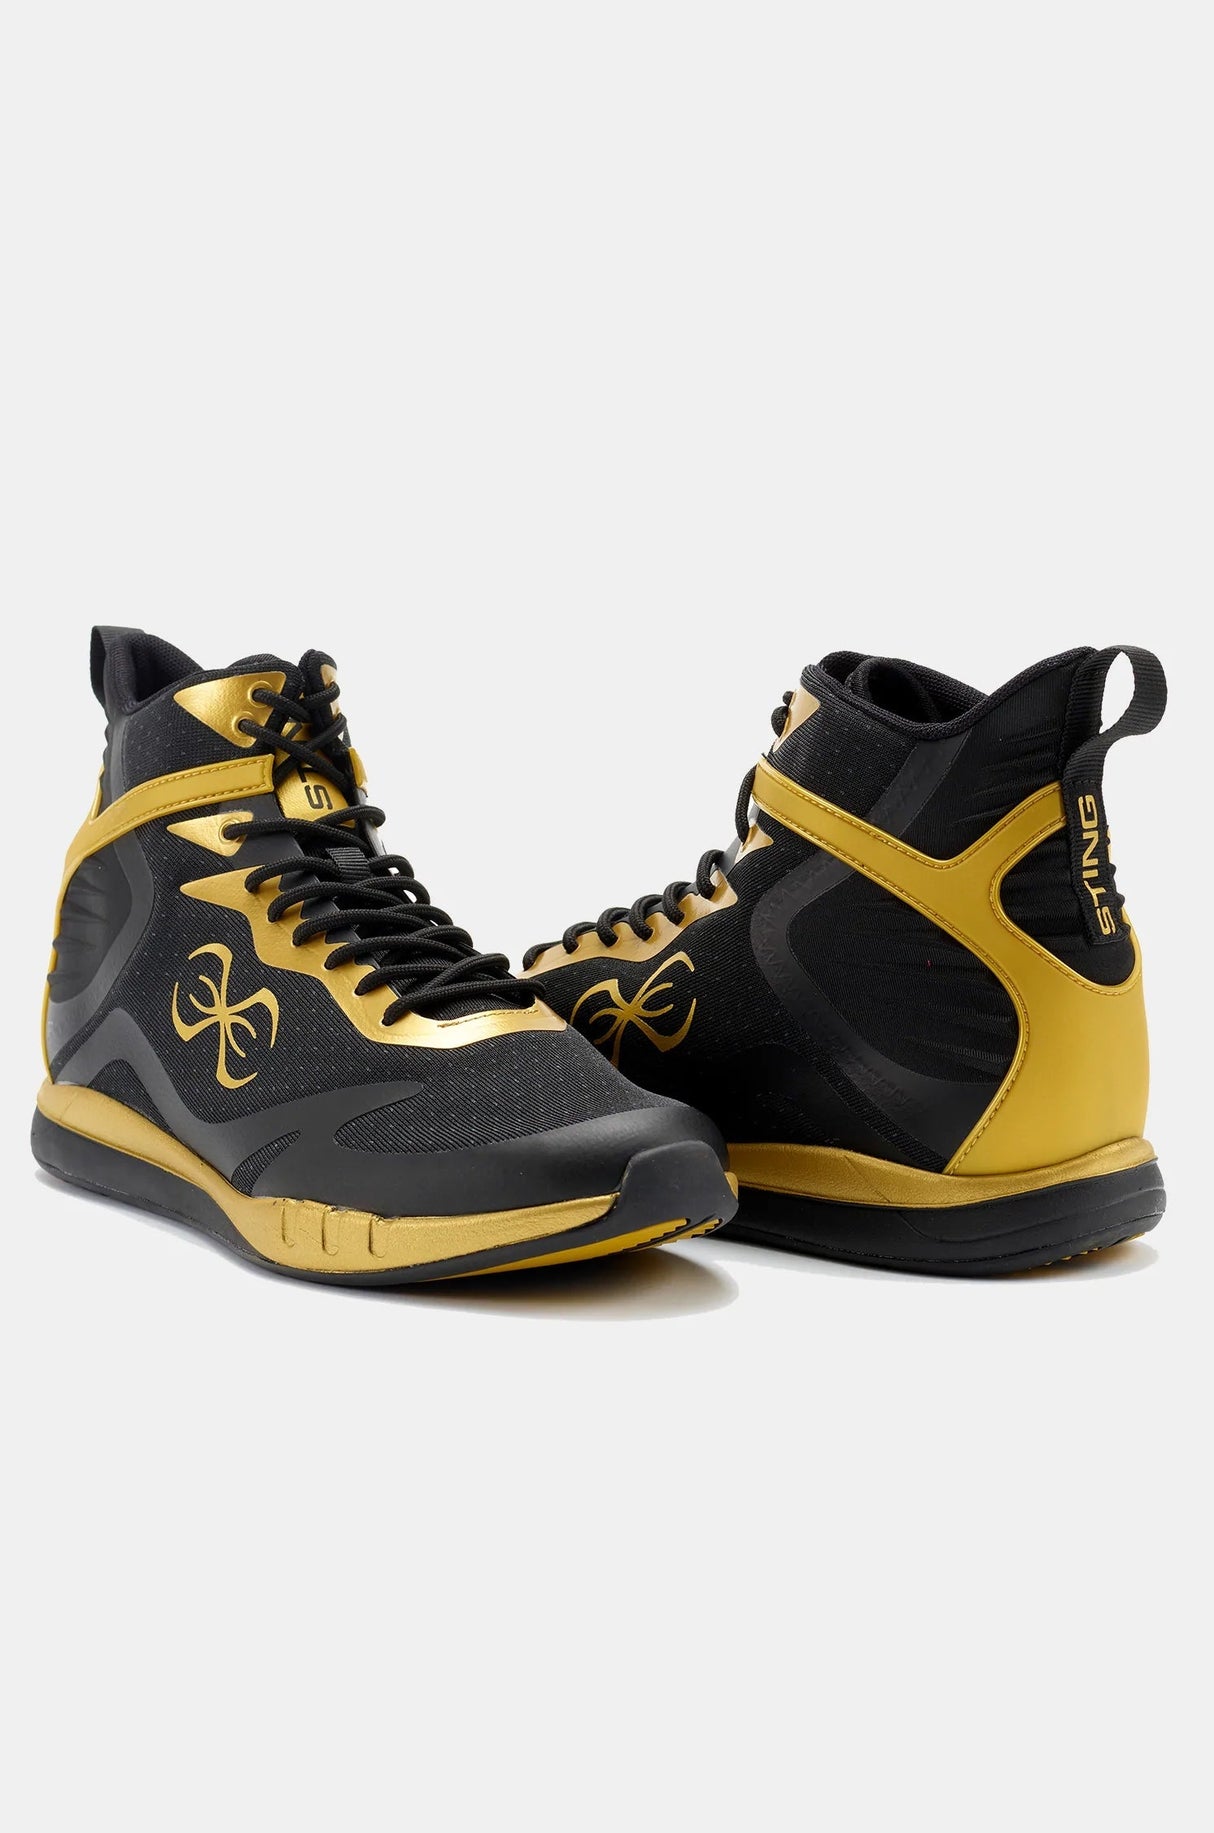 Chaussures de boxe Sting Viper 2.0 - noir/or, 1038394